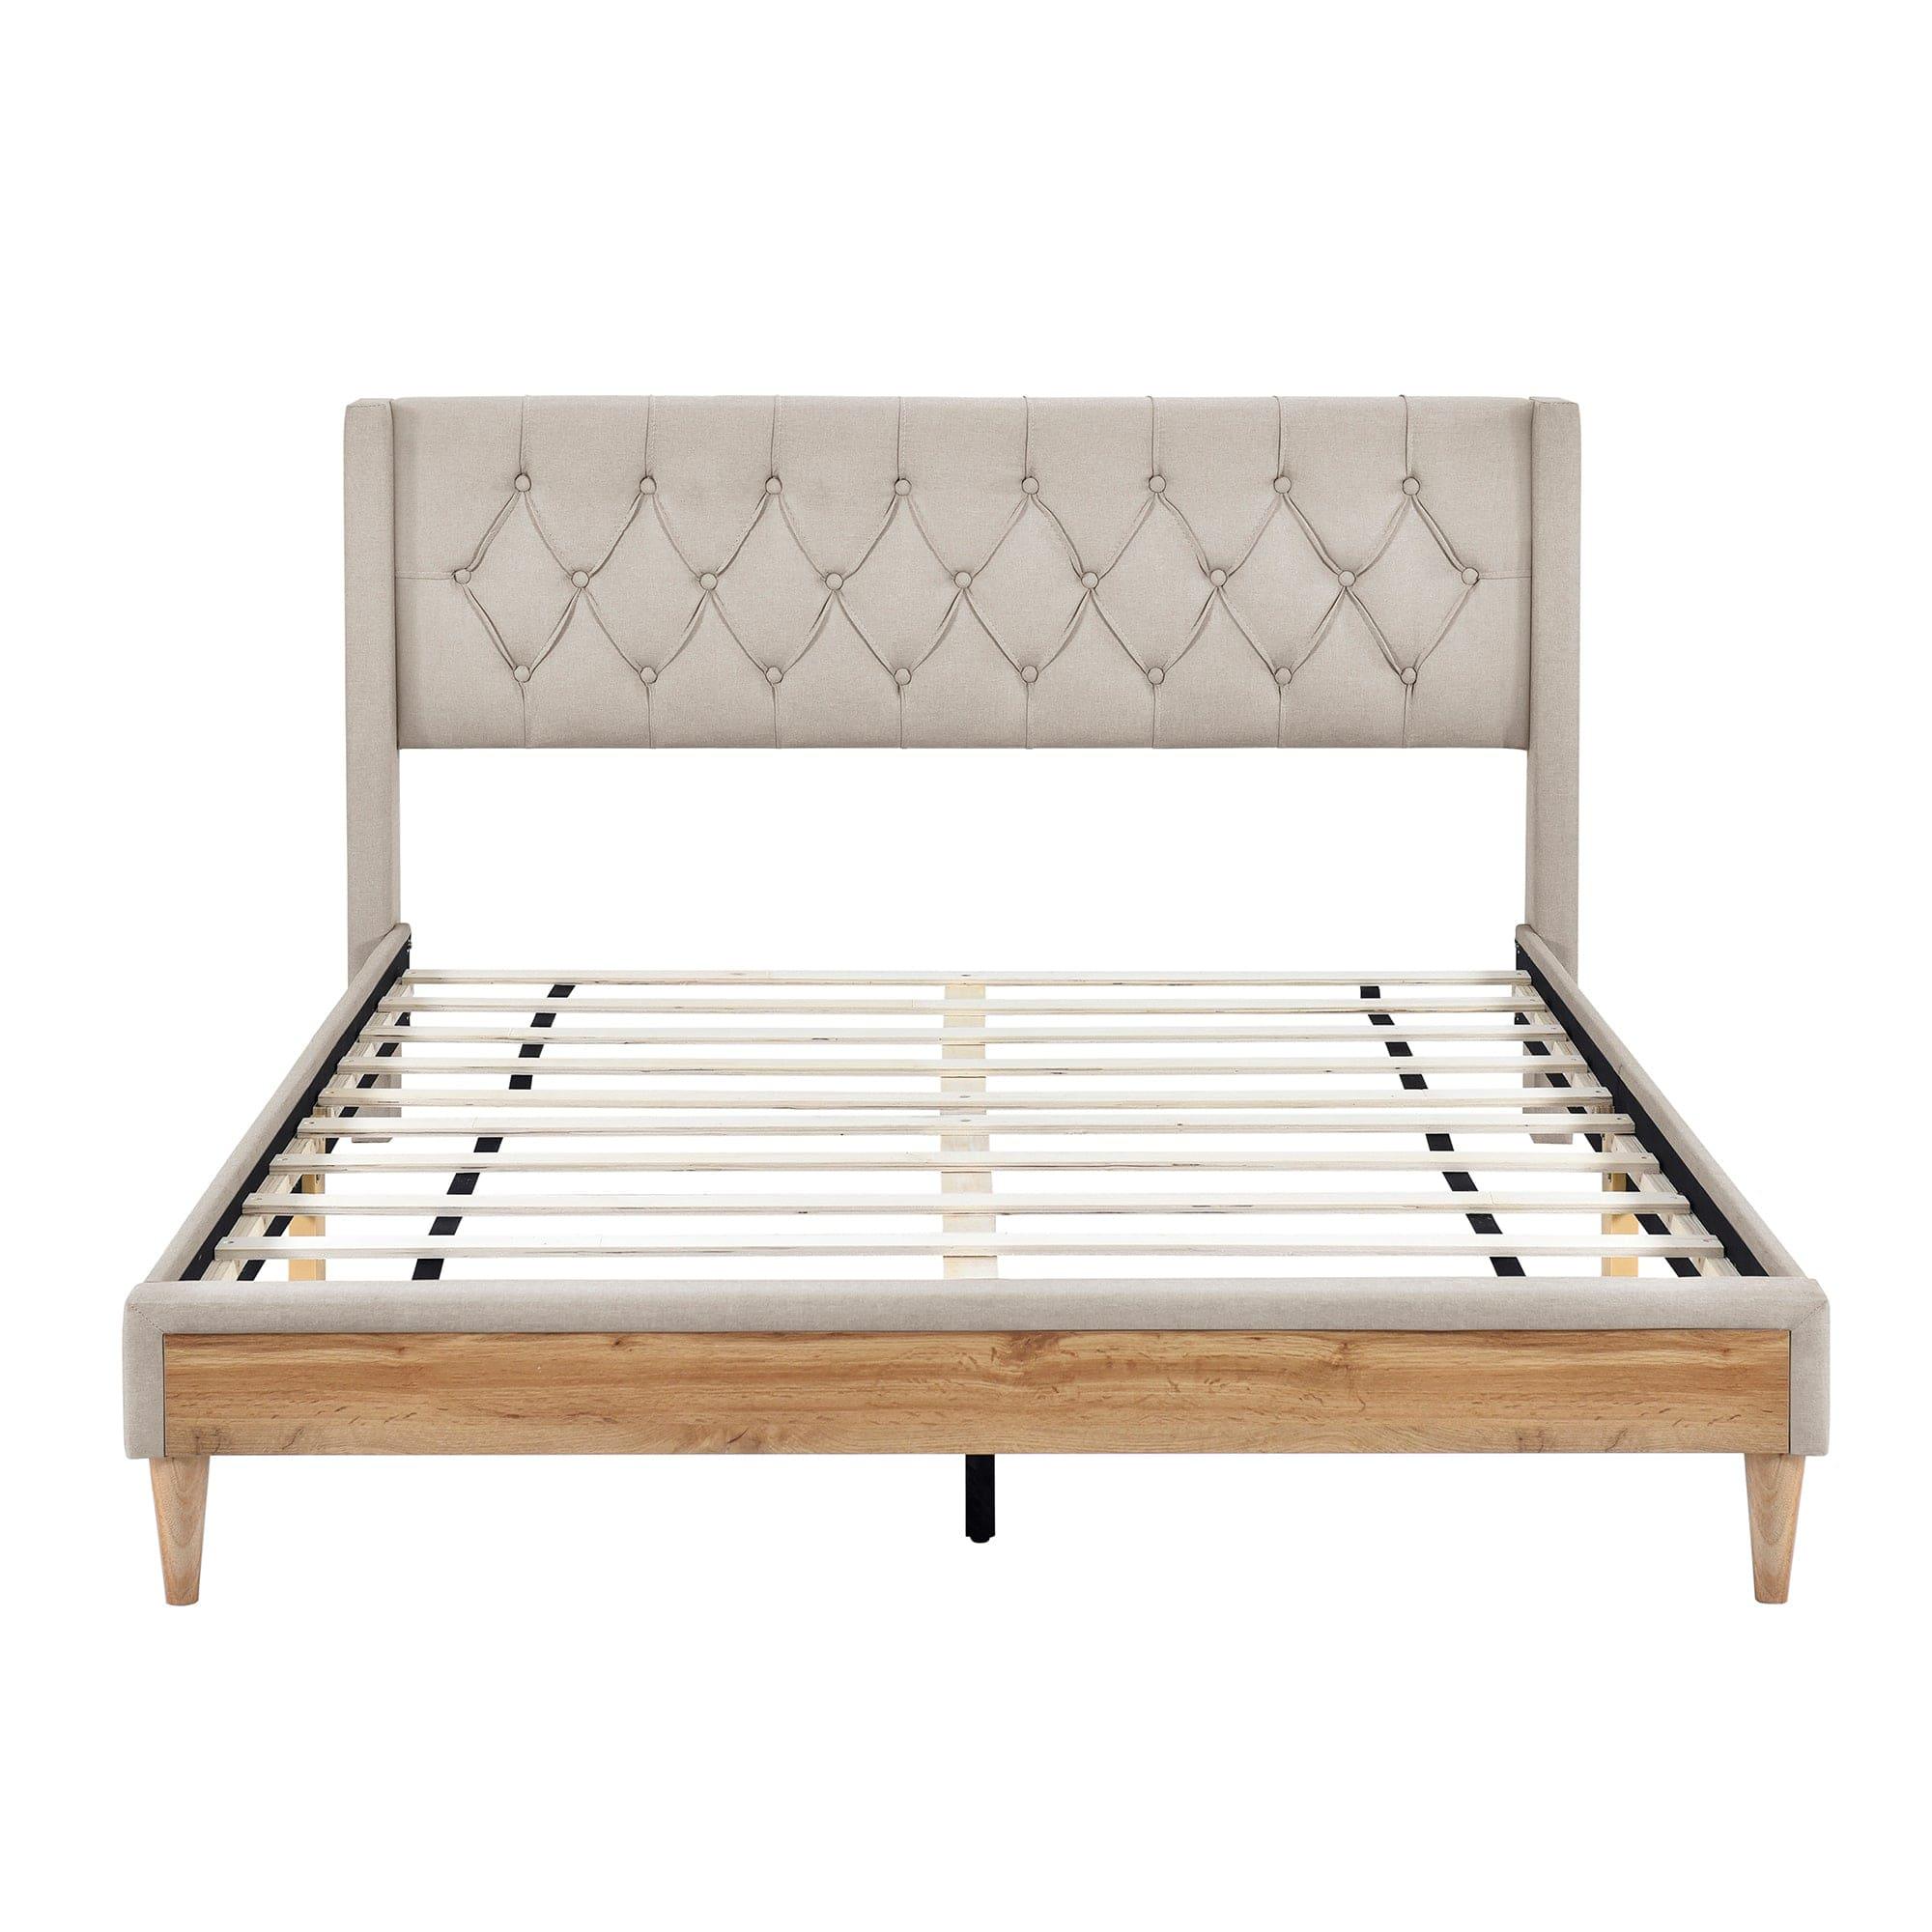 Shop Bisou Beige Upholstered Platform Bed 4pcs Bedroom Set -Queen Mademoiselle Home Decor